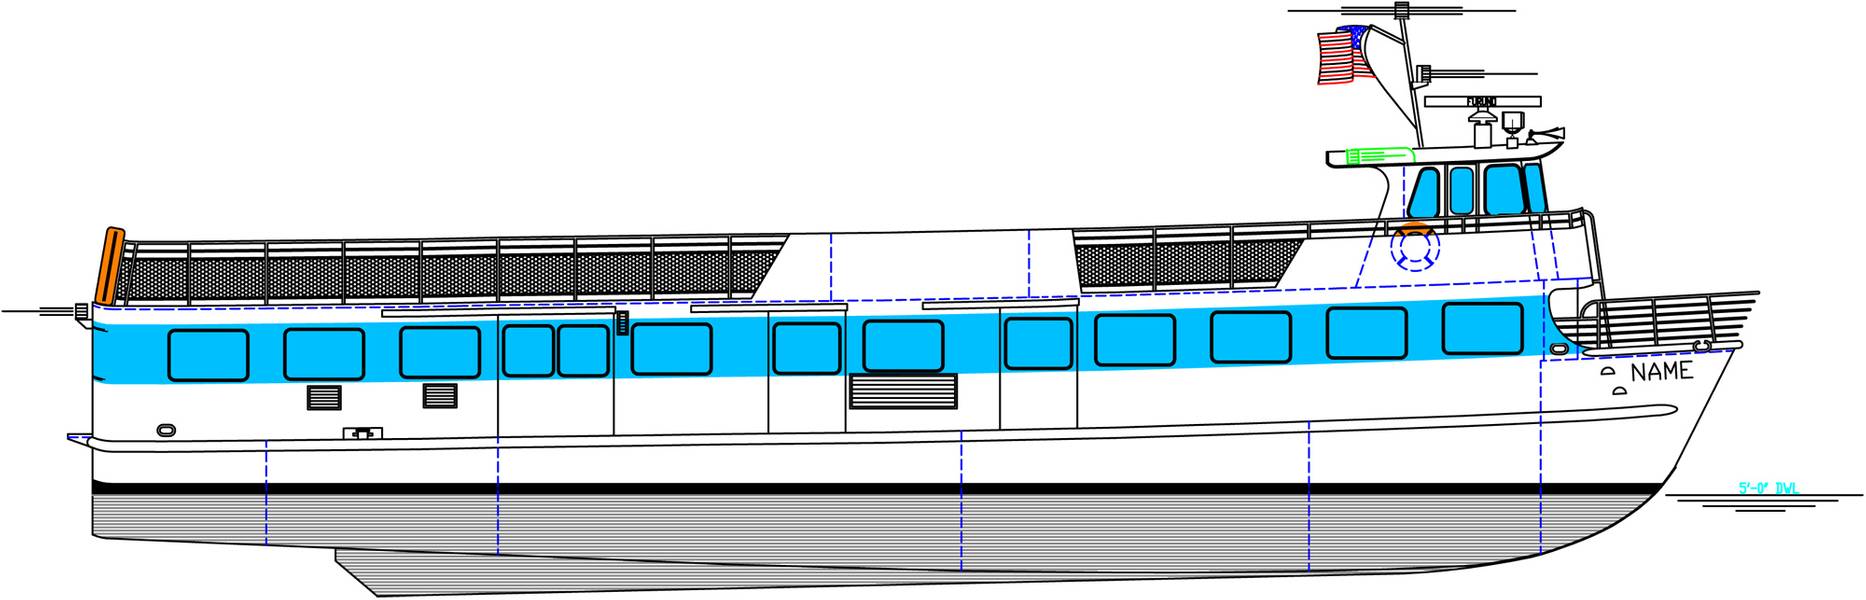 El transbordador Blount de 85 pies construirá para Fire Island Ferries. (Imagen: Blount Boats)